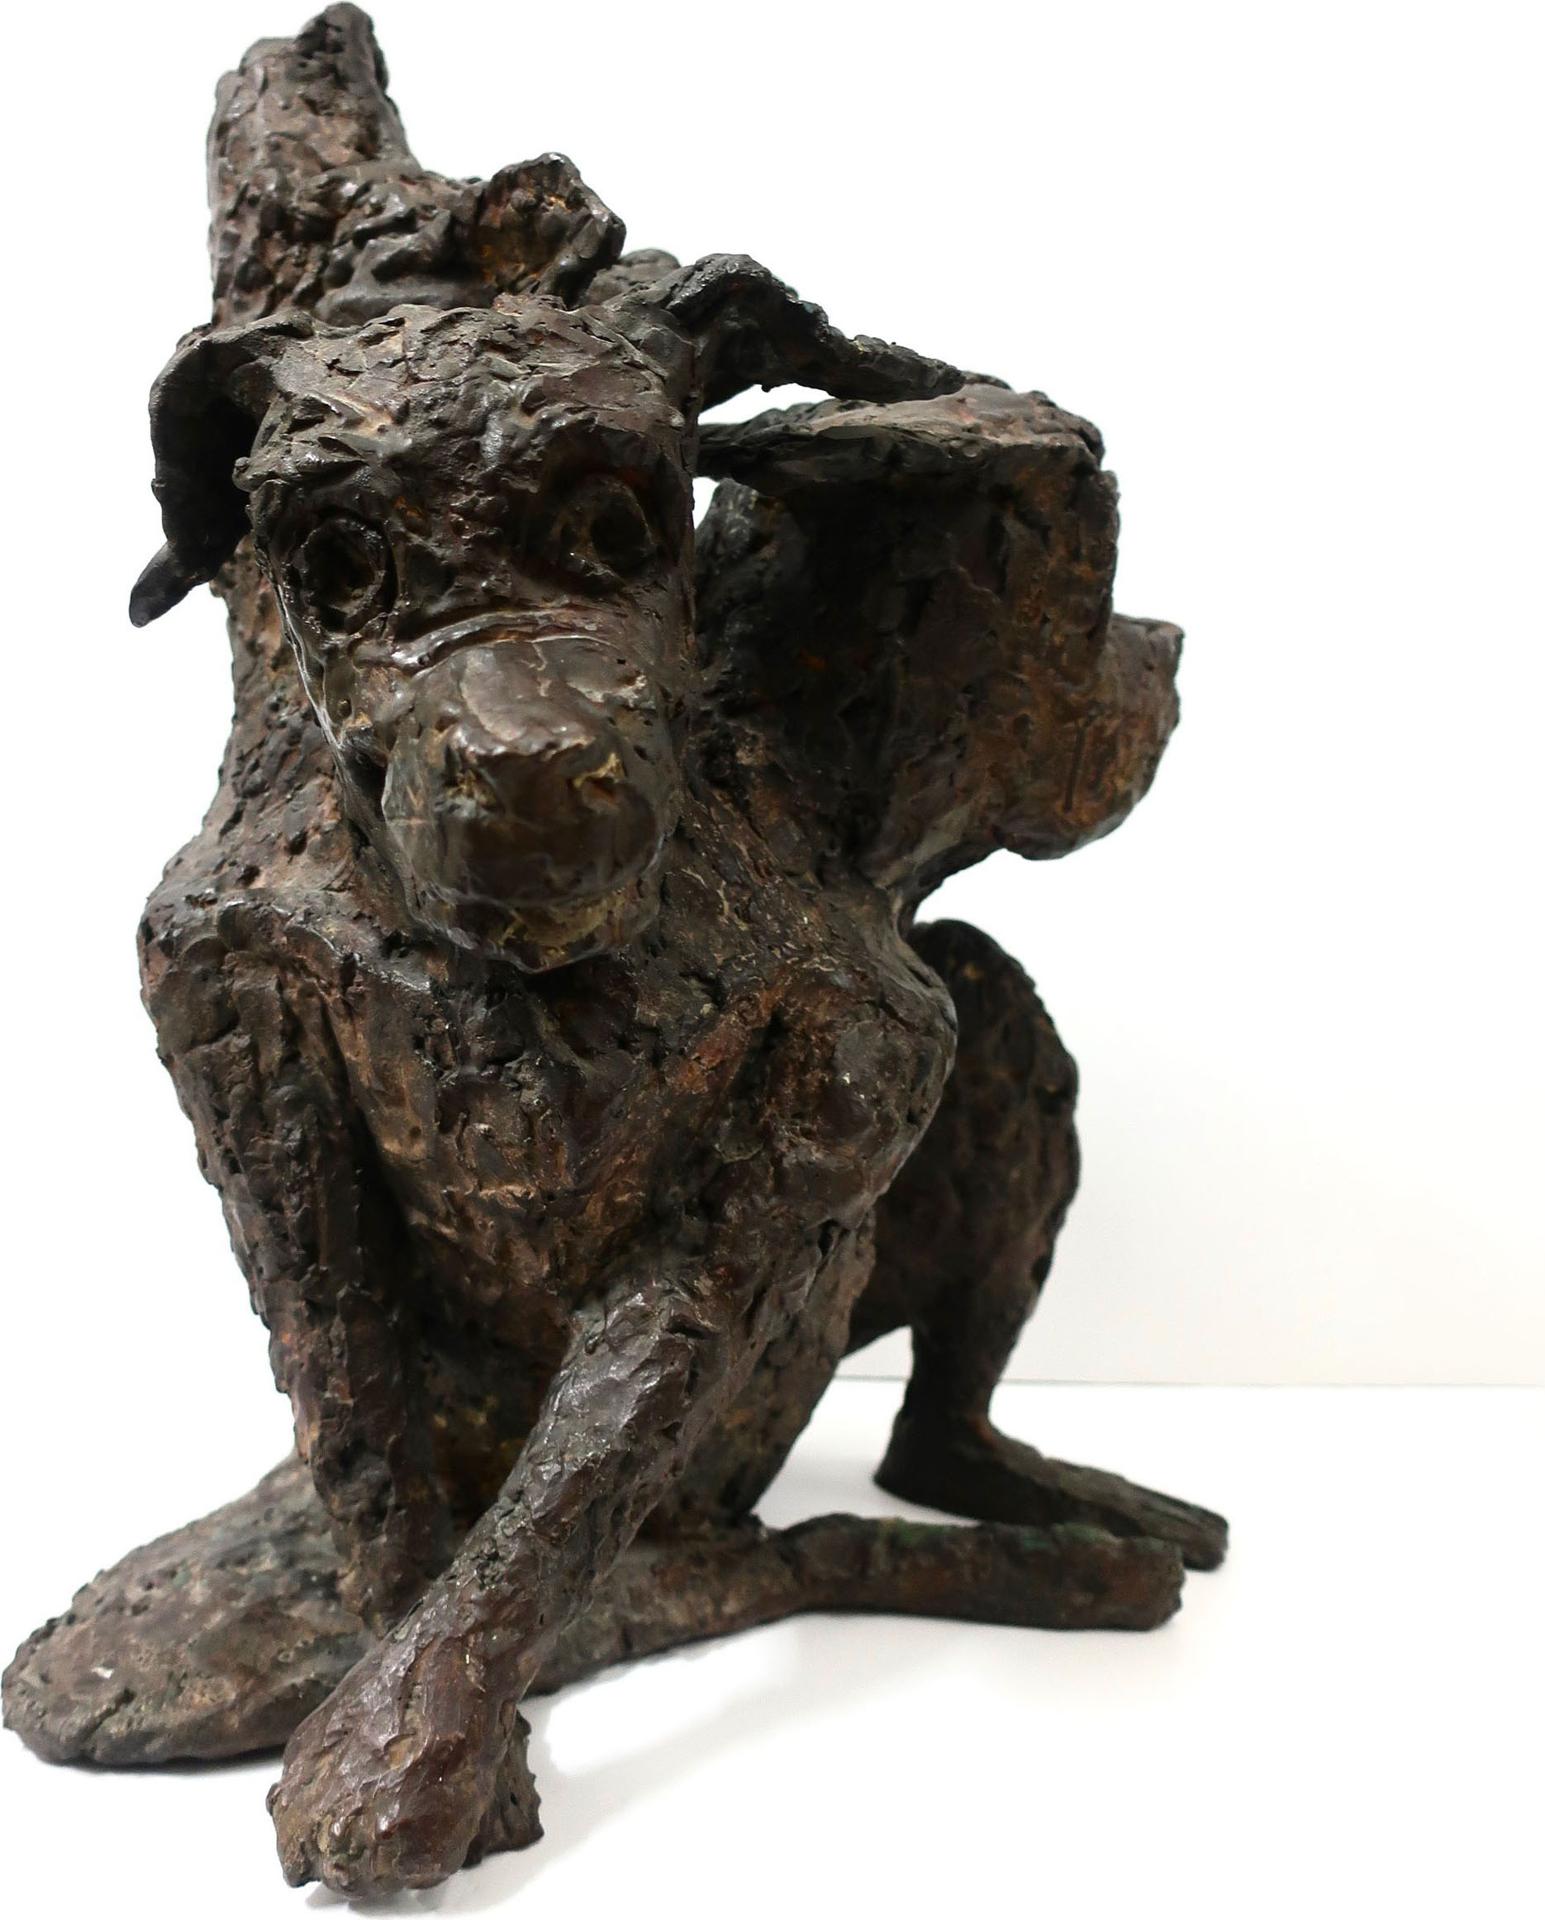 Mary Hecht - Cerberus (Three-Headed Dog)